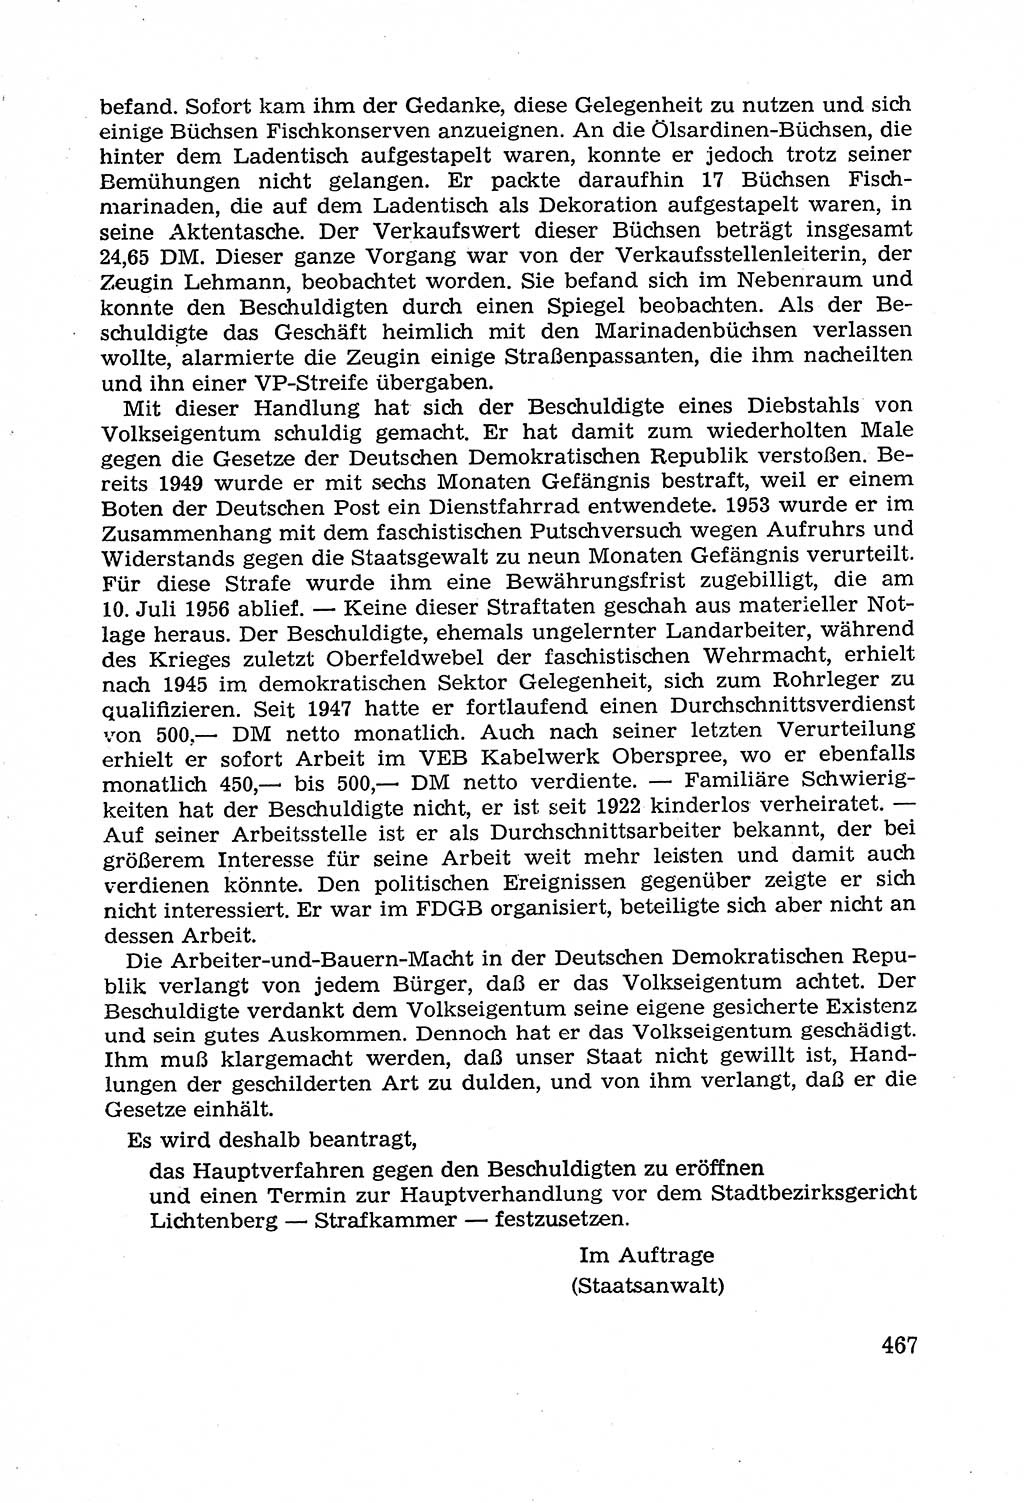 Leitfaden des Strafprozeßrechts der Deutschen Demokratischen Republik (DDR) 1959, Seite 467 (LF StPR DDR 1959, S. 467)